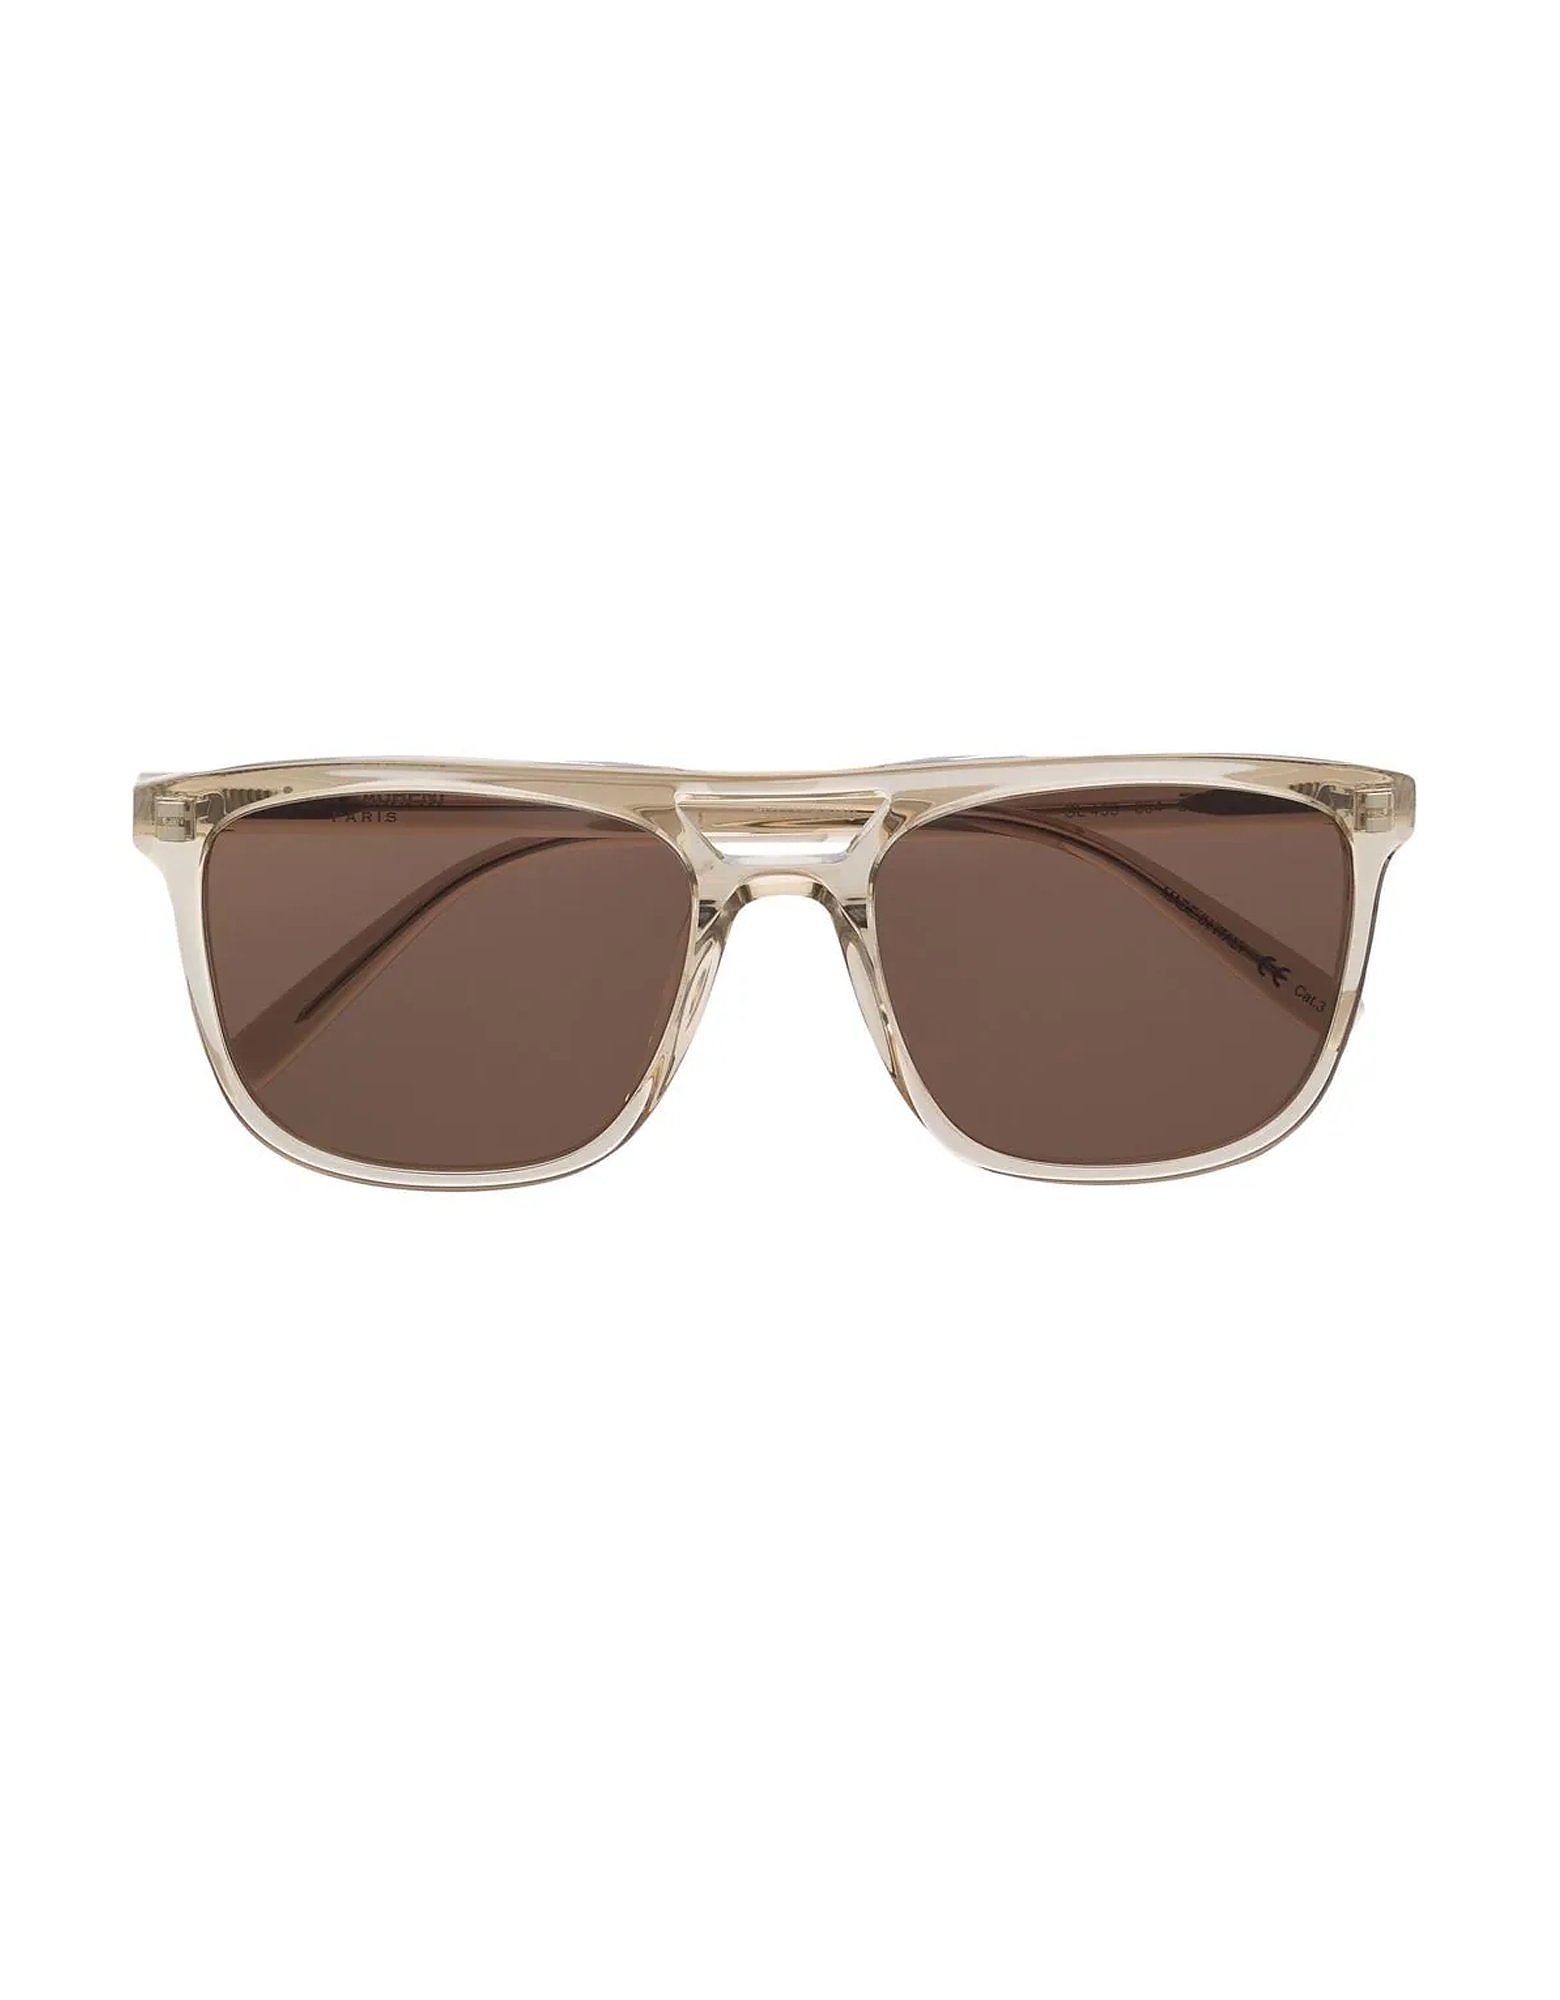 Saint Laurent Sunglasses Acetate Men's Sunglasses